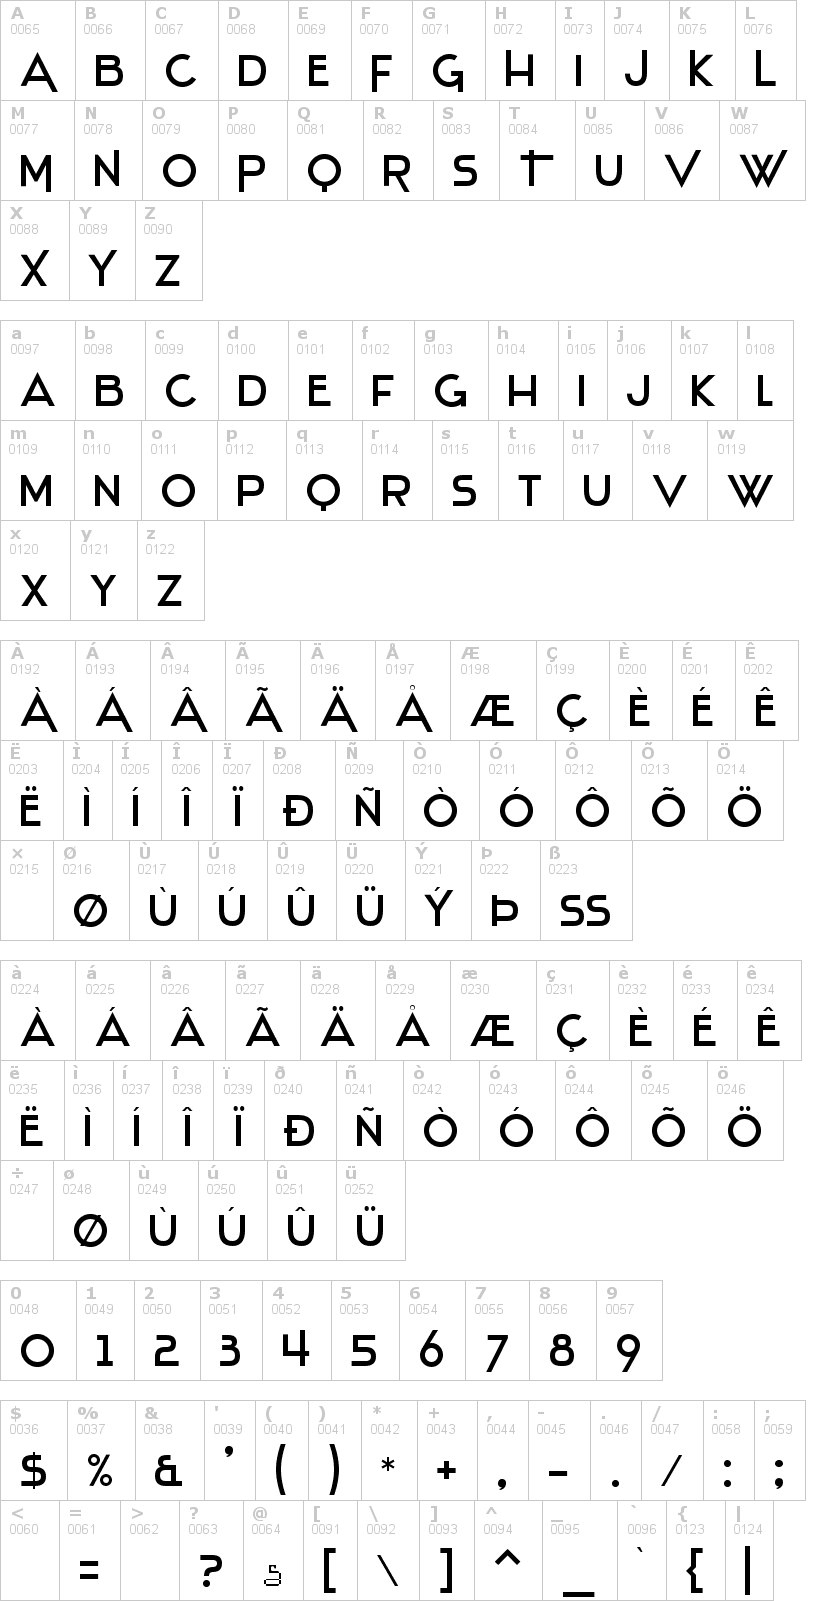 Lettere dell'alfabeto del font stentiga con le quali è possibile realizzare adesivi prespaziati